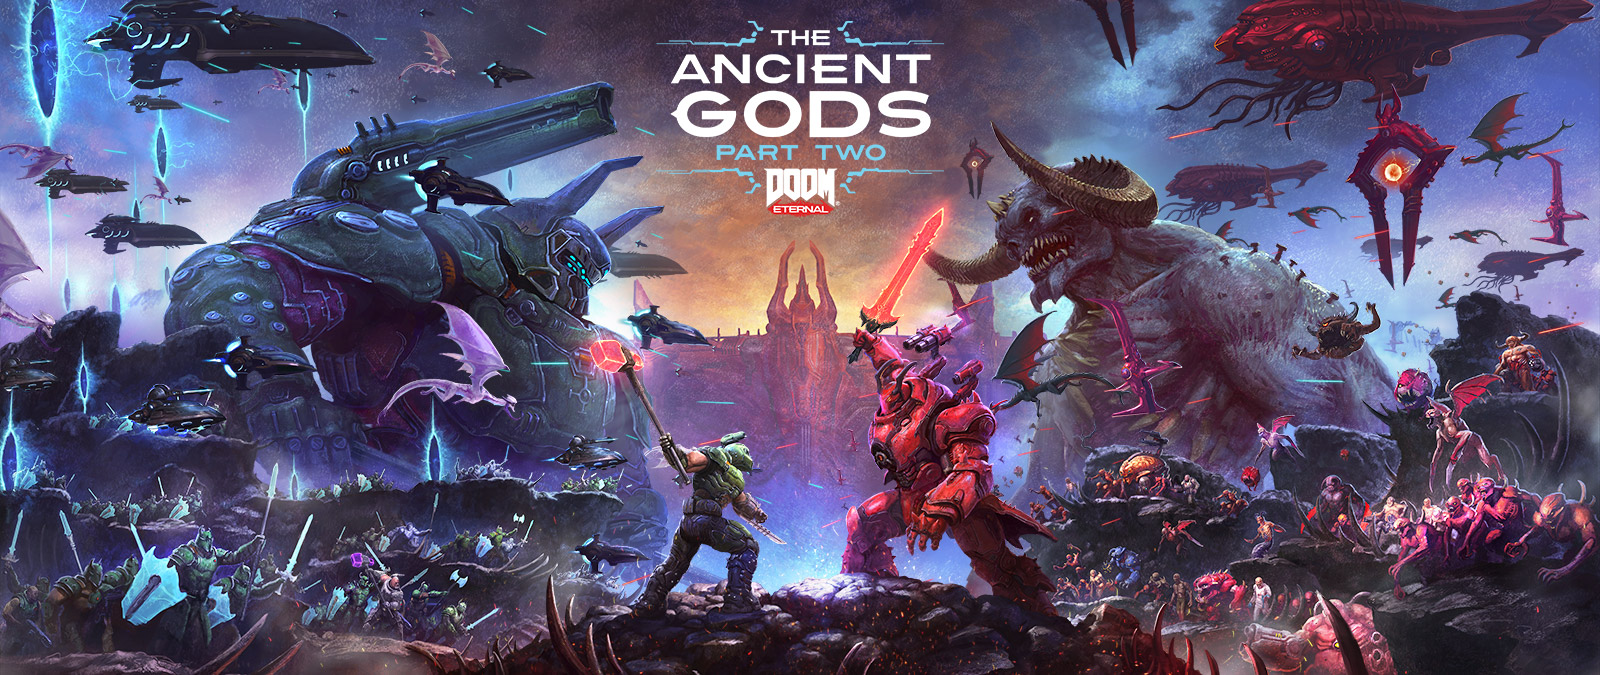 DOOM Eternal, The Ancient Gods Part Two, Une bataille épique entre Slayers et Démons dans un paysage infernal au sol rocailleux. 